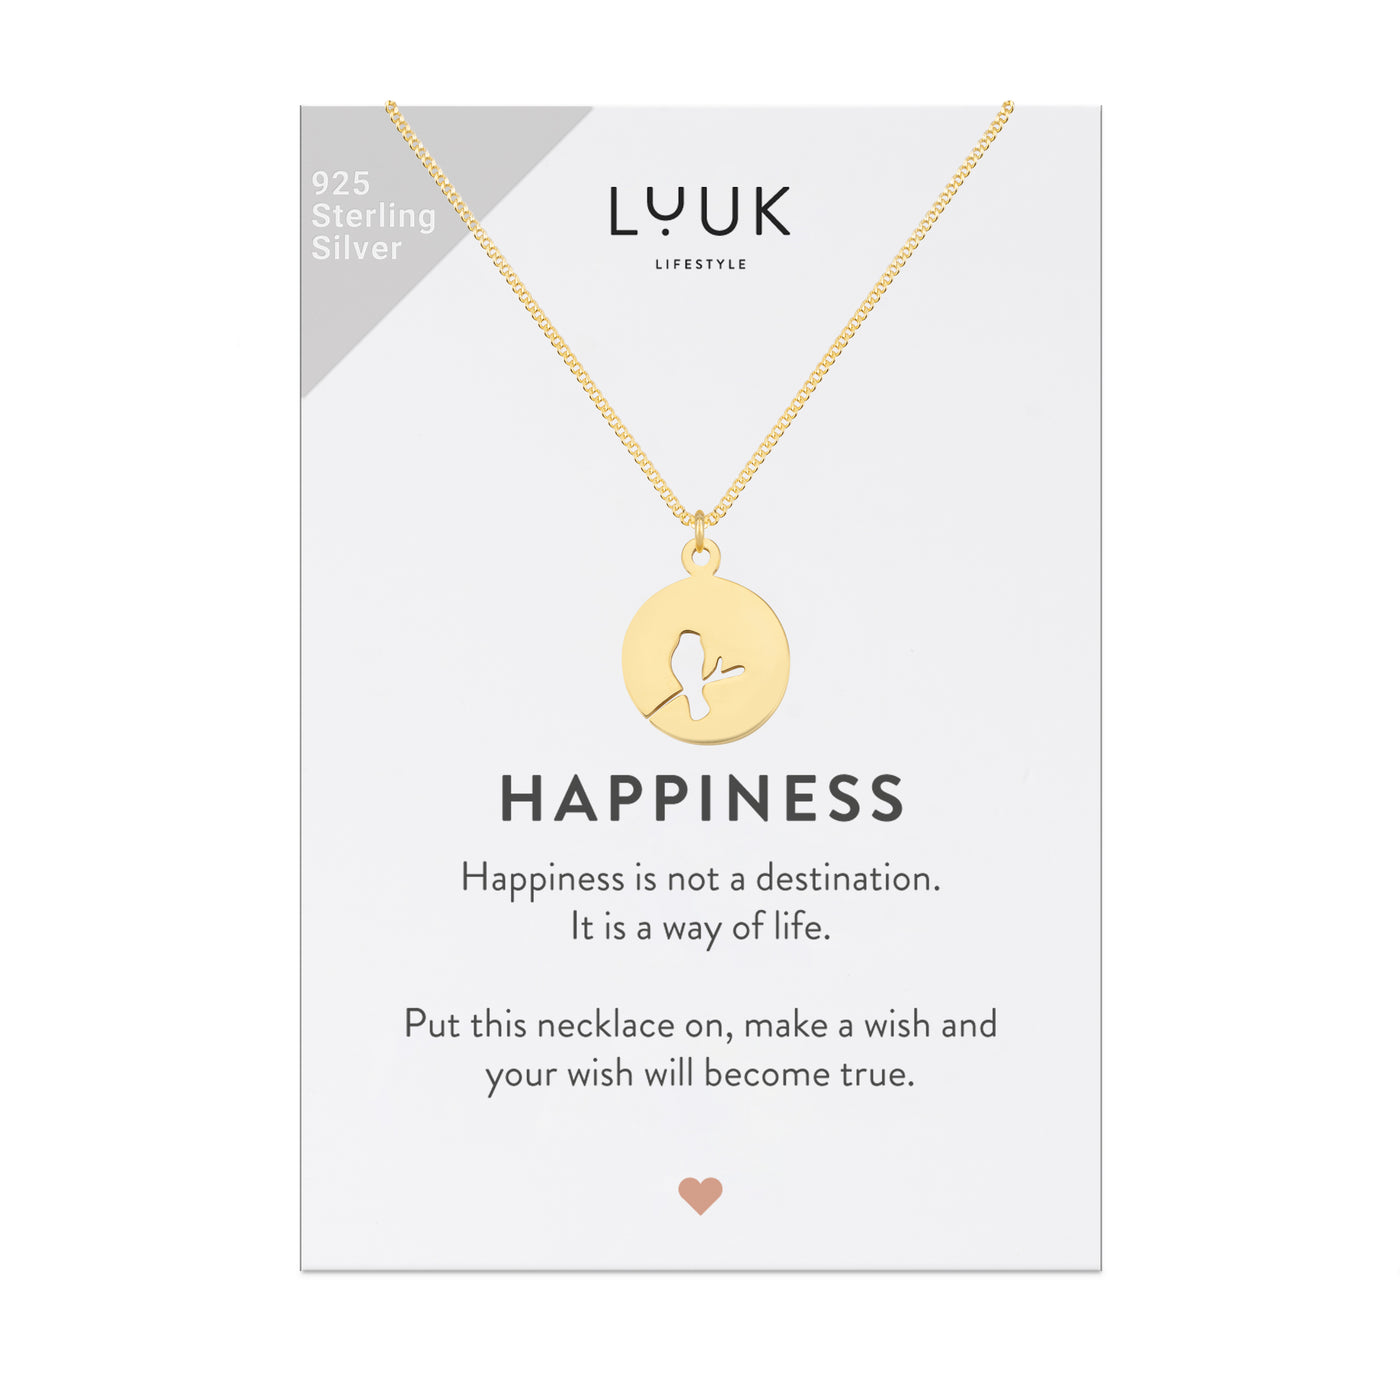 Goldene Halskette mit Amsel Anhänger auf Happiness Spruchkarte von der Brand Luuk Lifestyle 